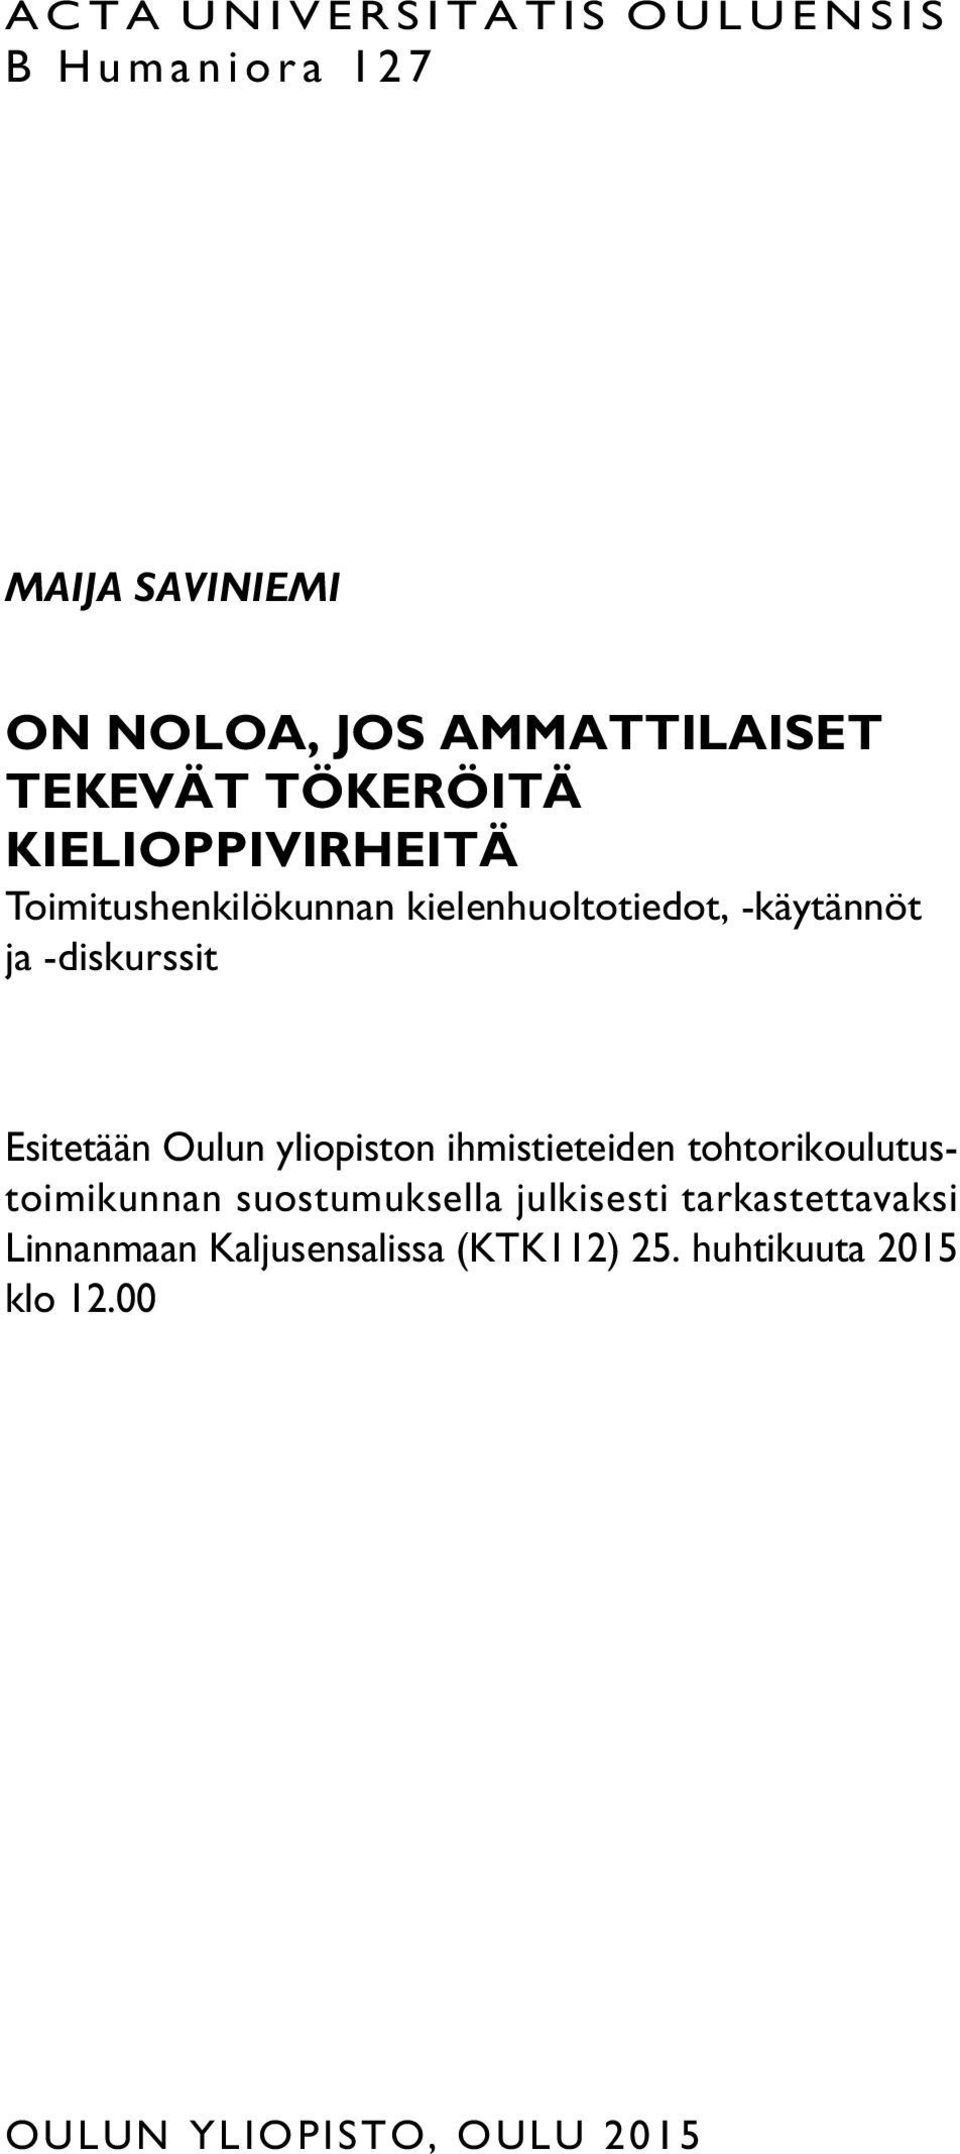 Esitetään Oulun yliopiston ihmistieteiden tohtorikoulutustoimikunnan suostumuksella julkisesti